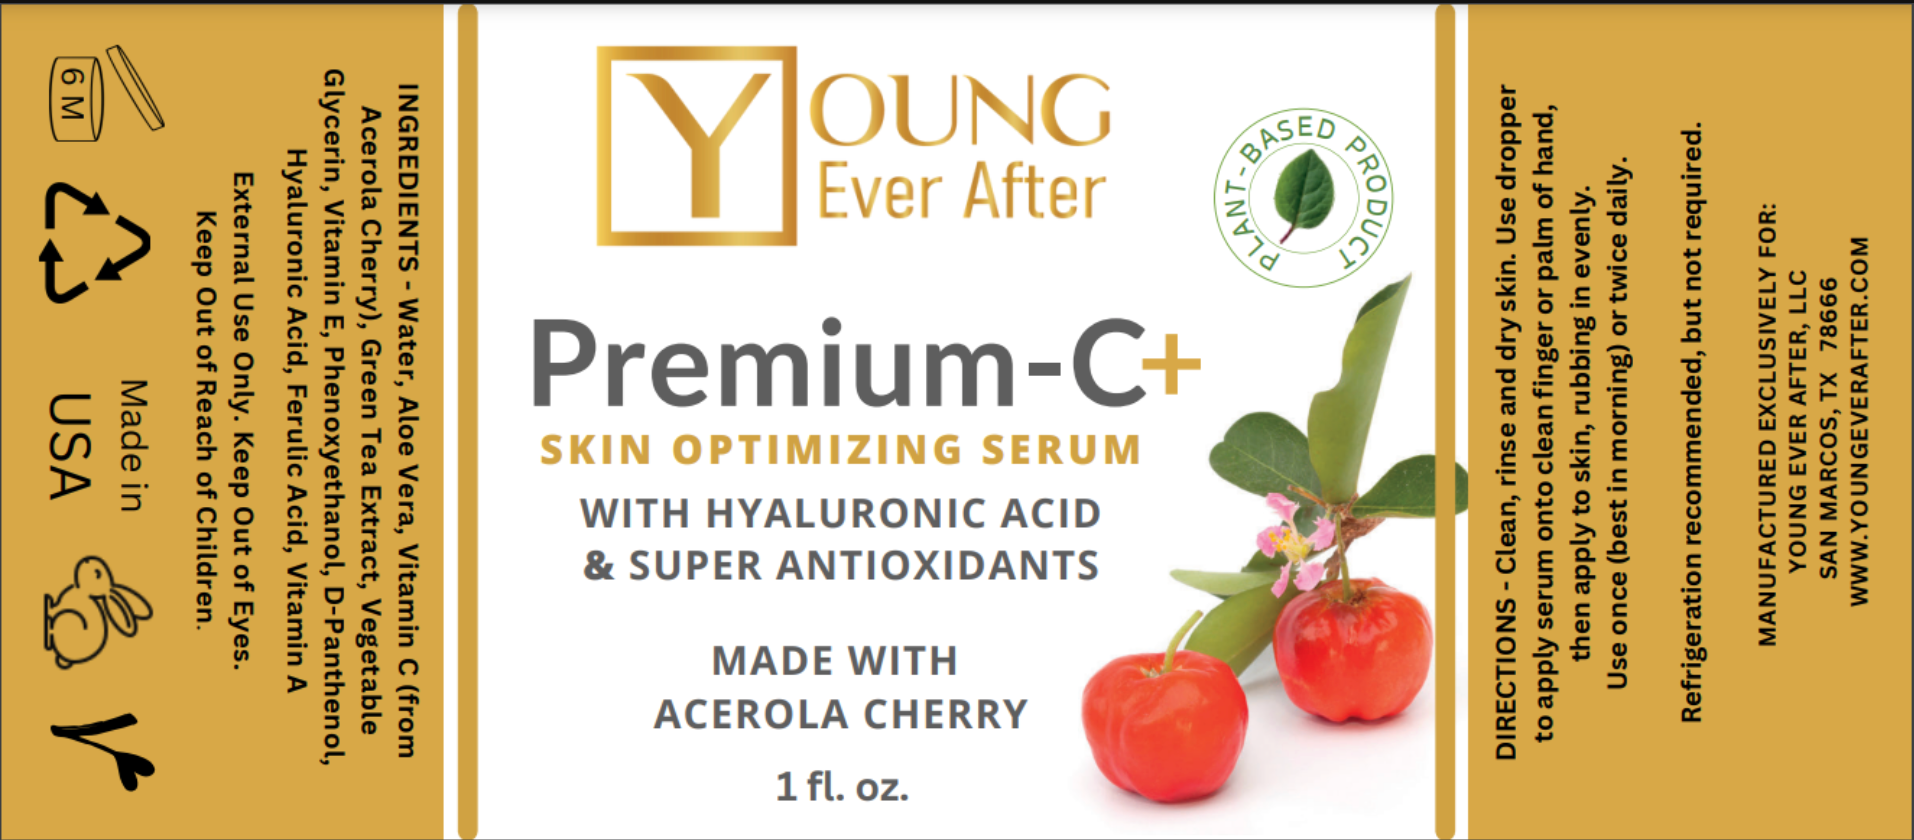 Premium-C+ Skin Optimizing Serum for Men - New Product